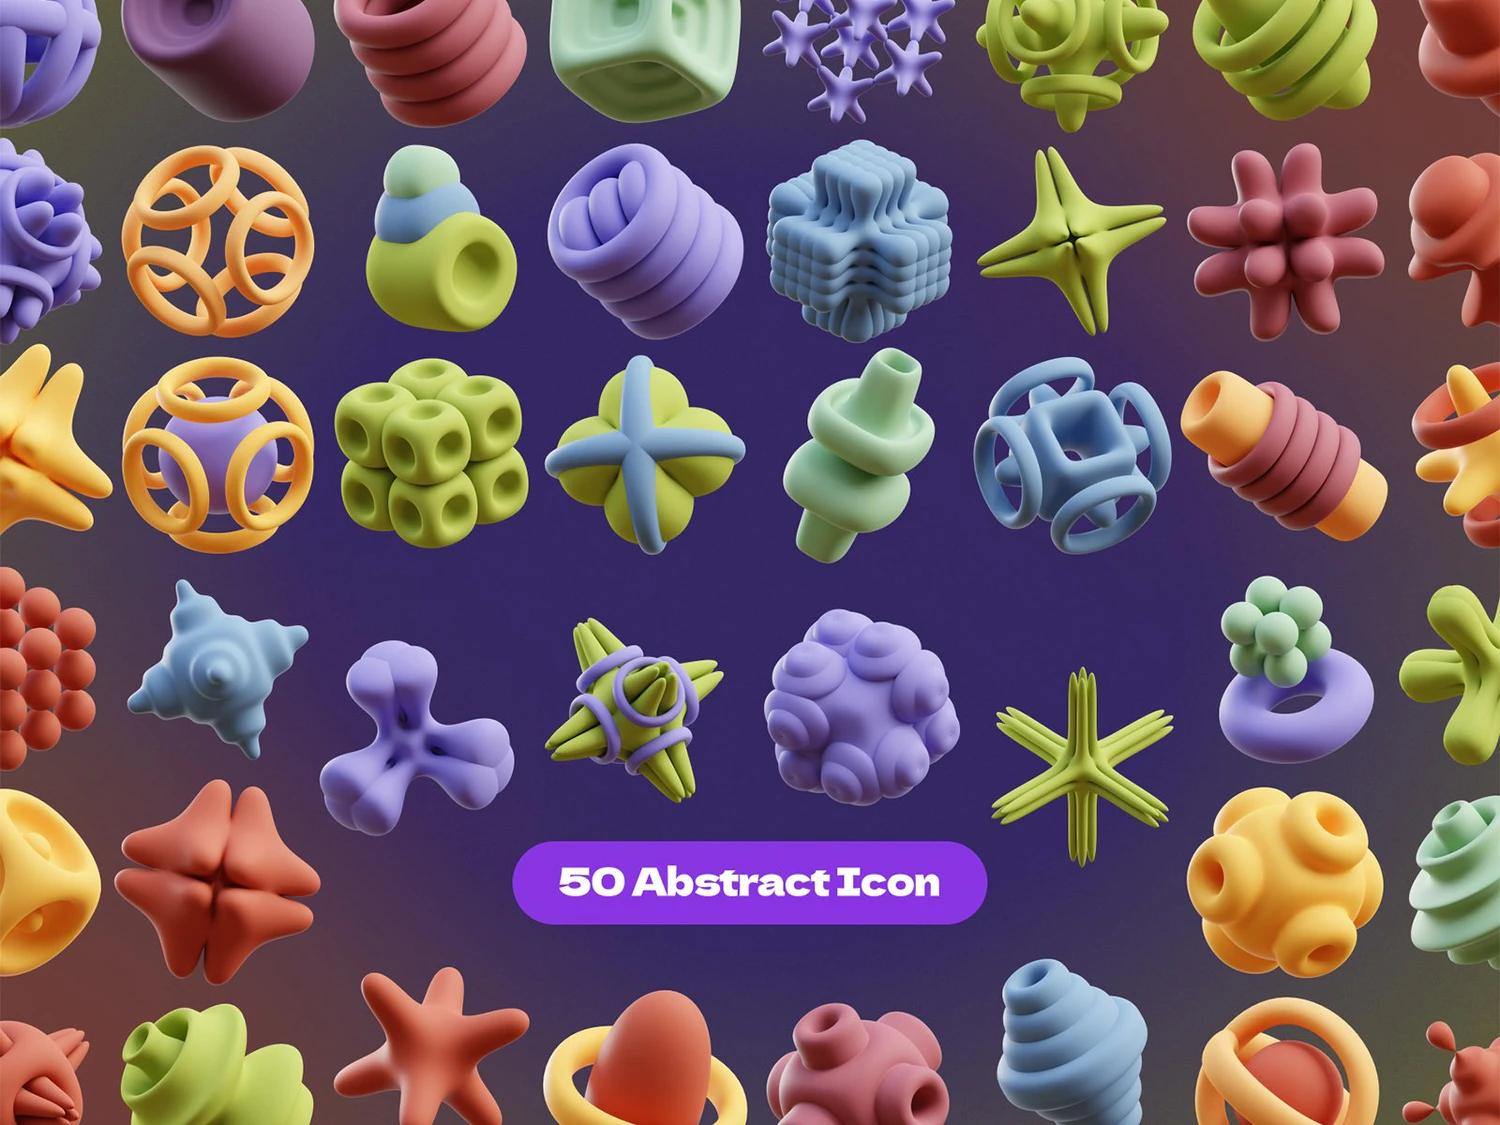 5133 创意立体抽象形状的3d立体插画模型素材-Abstract Shapes@GOOODME.COM